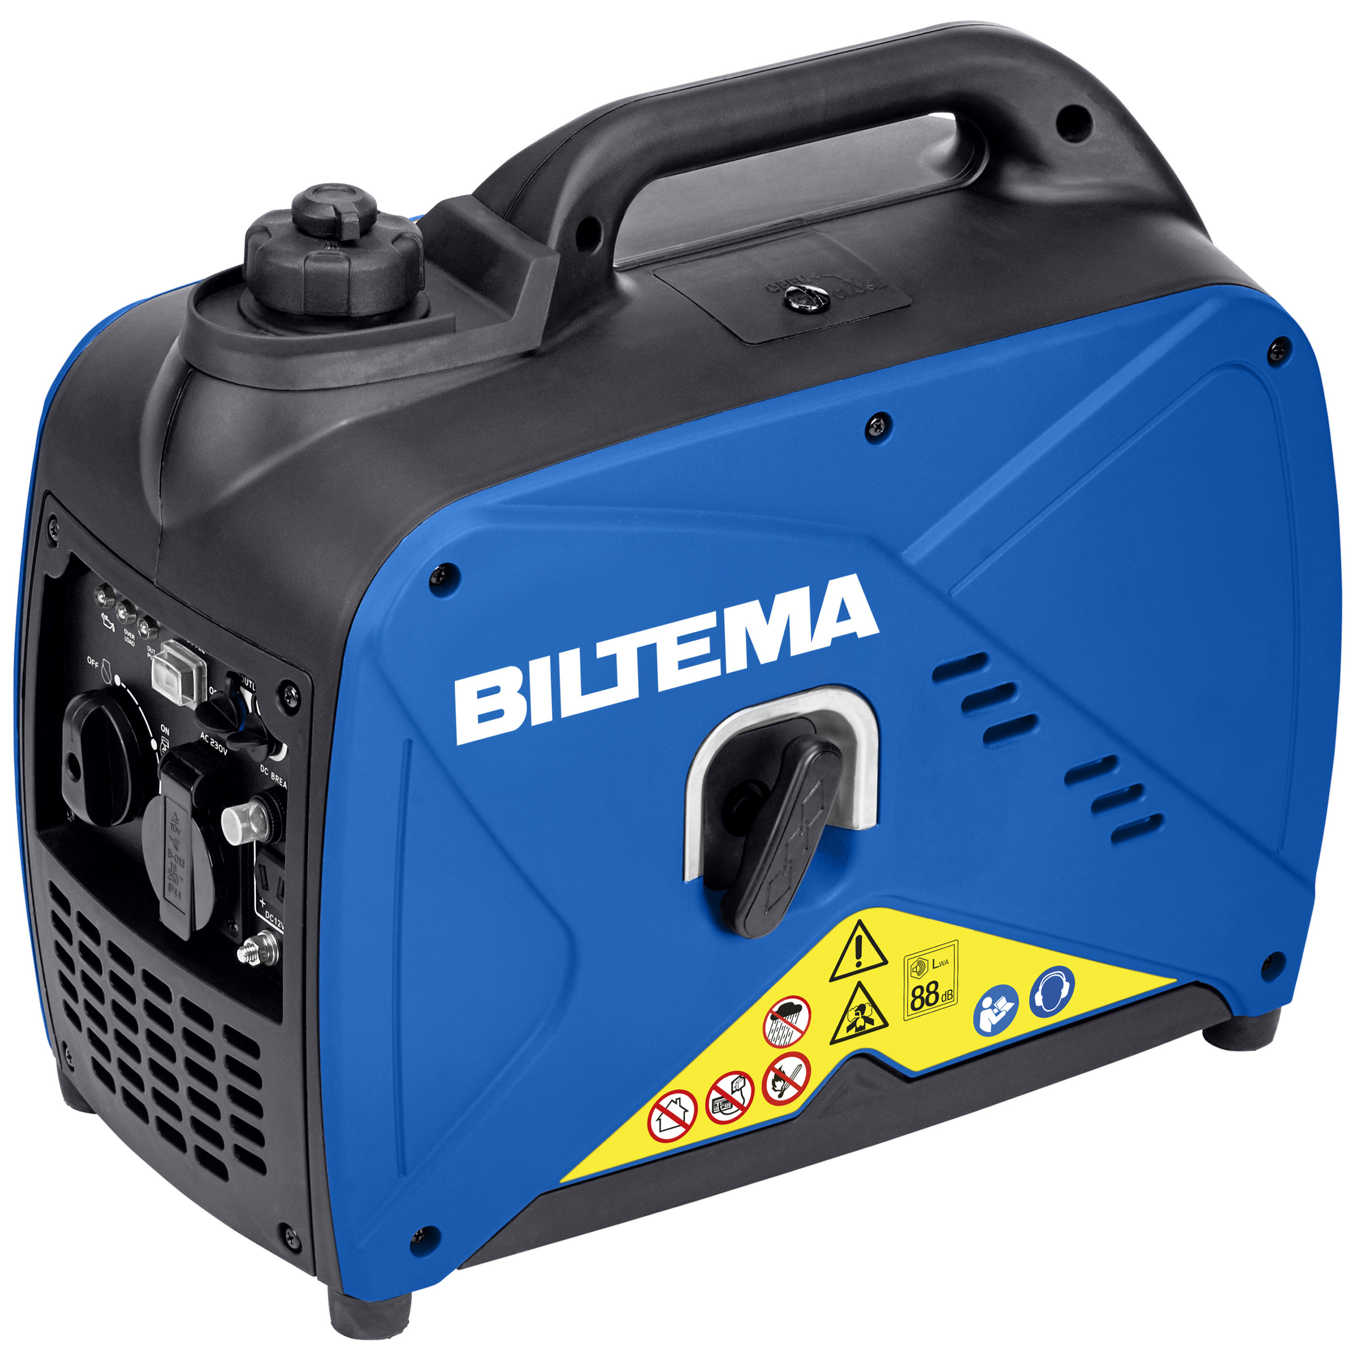 Отзывы генератор Biltema DG 1250is